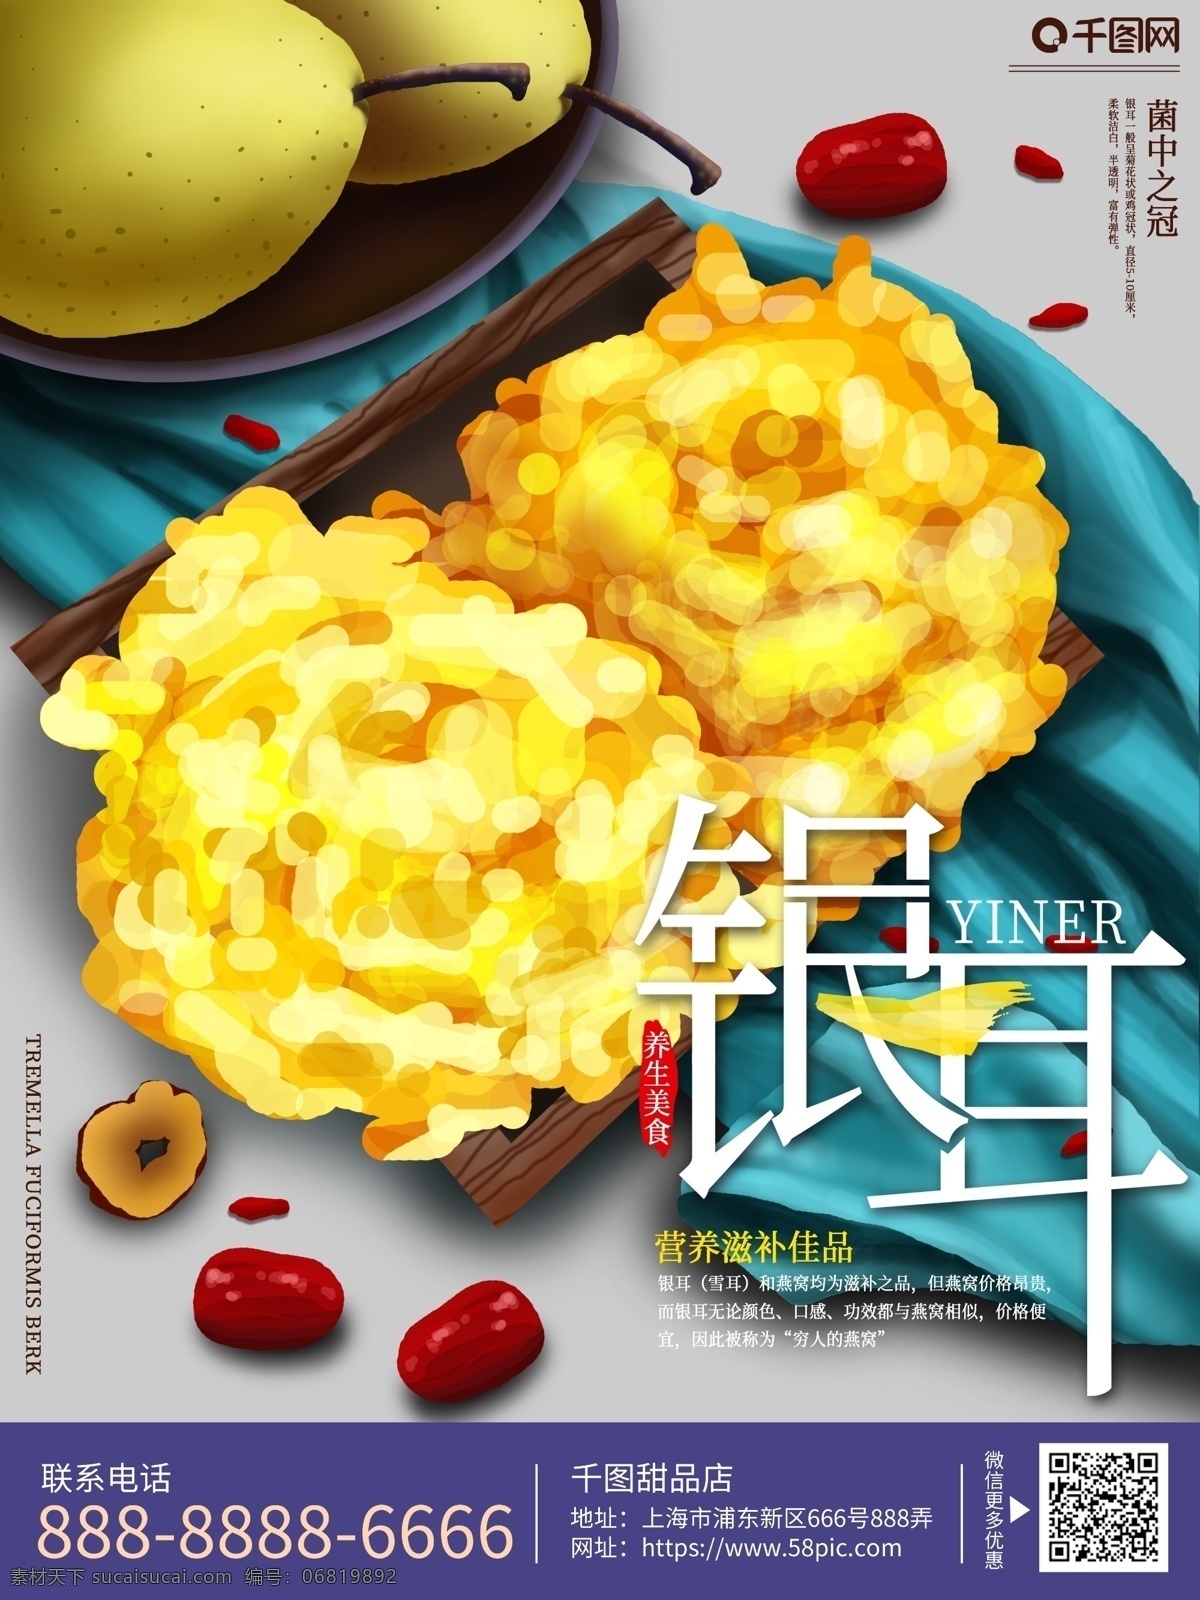 原创 手绘 银耳 养生 食品 海报 雪耳 红枣 雪梨 甜品 美食 食物 宣传单 美食海报